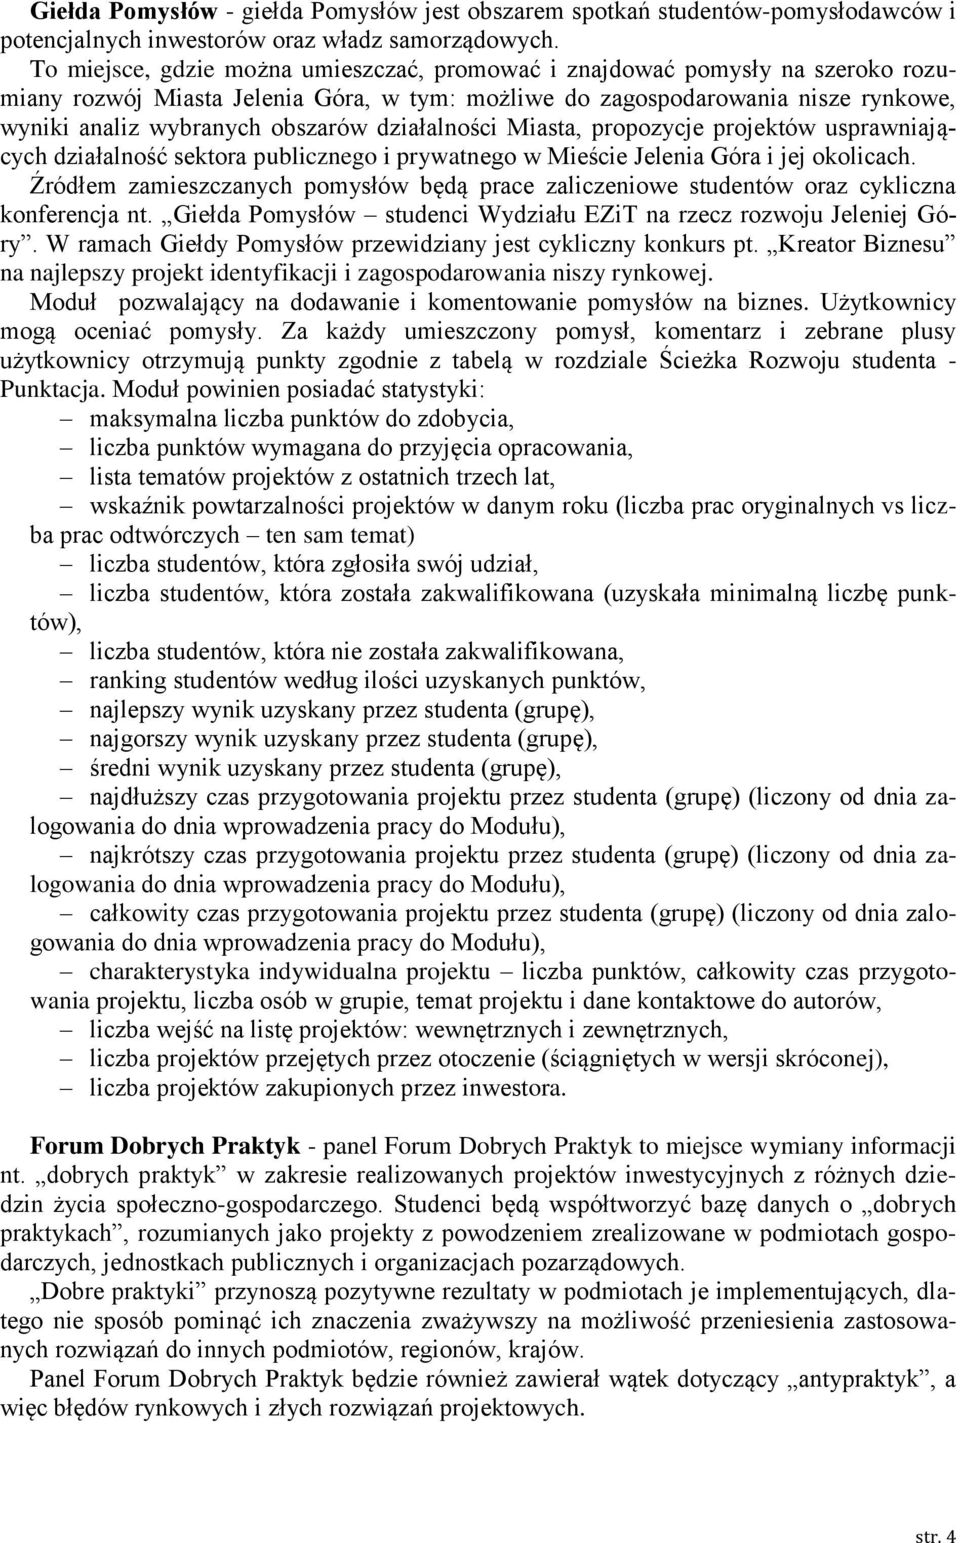 działalności Miasta, propozycje projektów usprawniających działalność sektora publicznego i prywatnego w Mieście Jelenia Góra i jej okolicach.